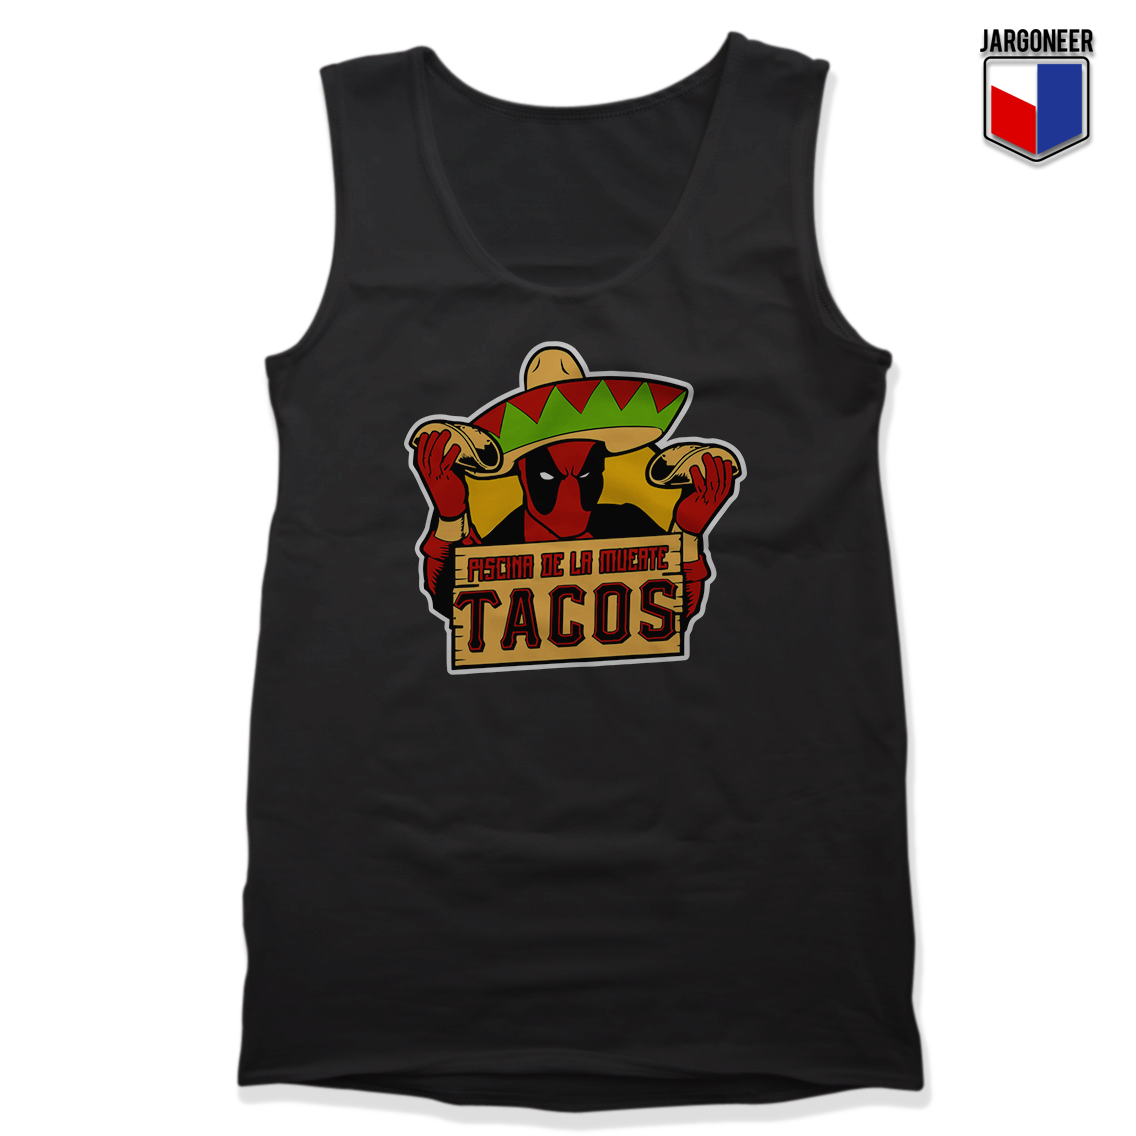 Dead Tacos Black Tank - Shop Unique Graphic Cool Shirt Designs